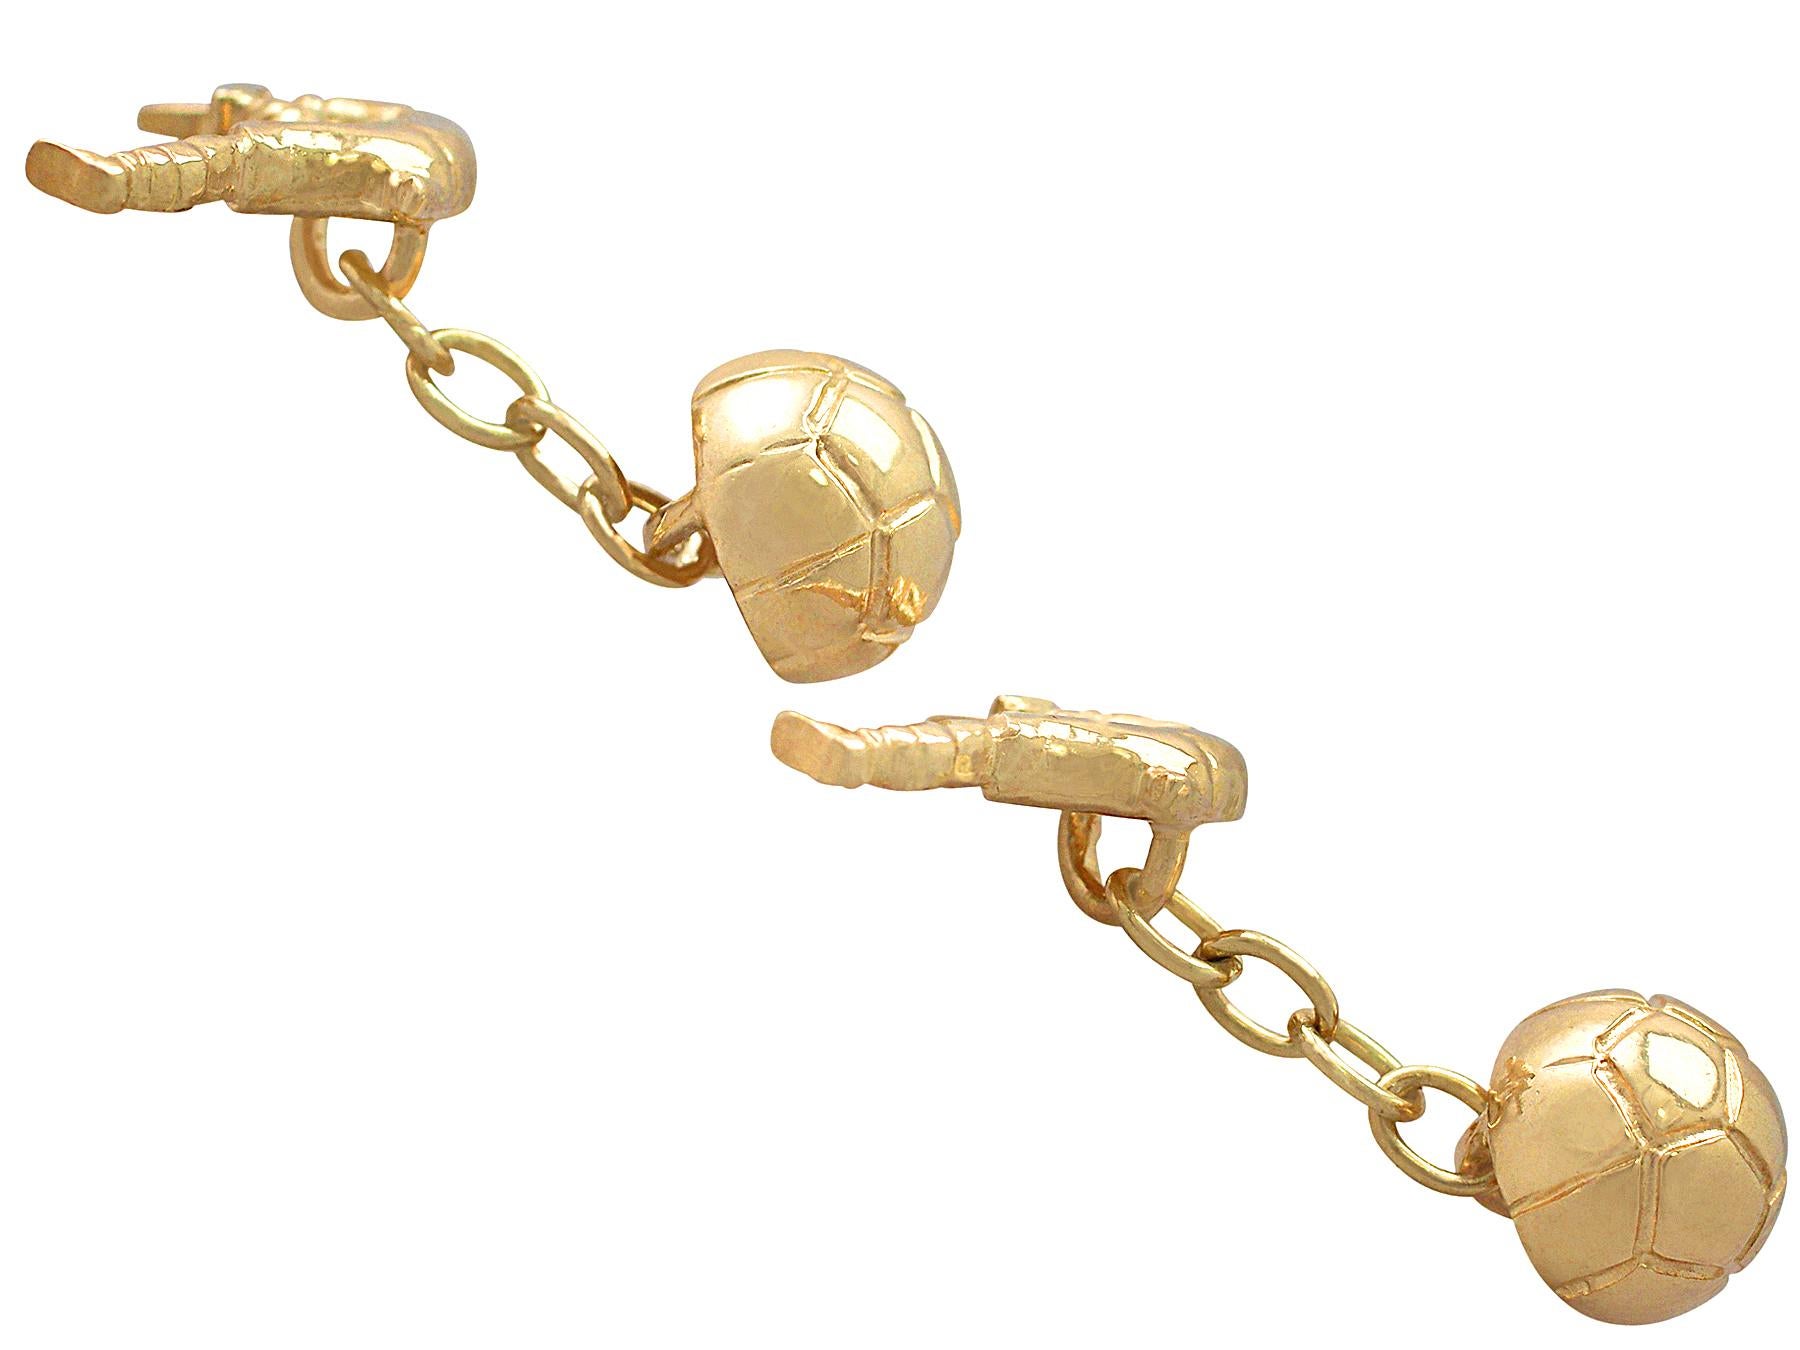 Une belle et impressionnante paire de boutons de manchette en or jaune 9 carats, représentant un ballon de football, fait partie de notre collection de bijoux contemporains et de bijoux de succession.

Ces boutons de manchette contemporains, fins et